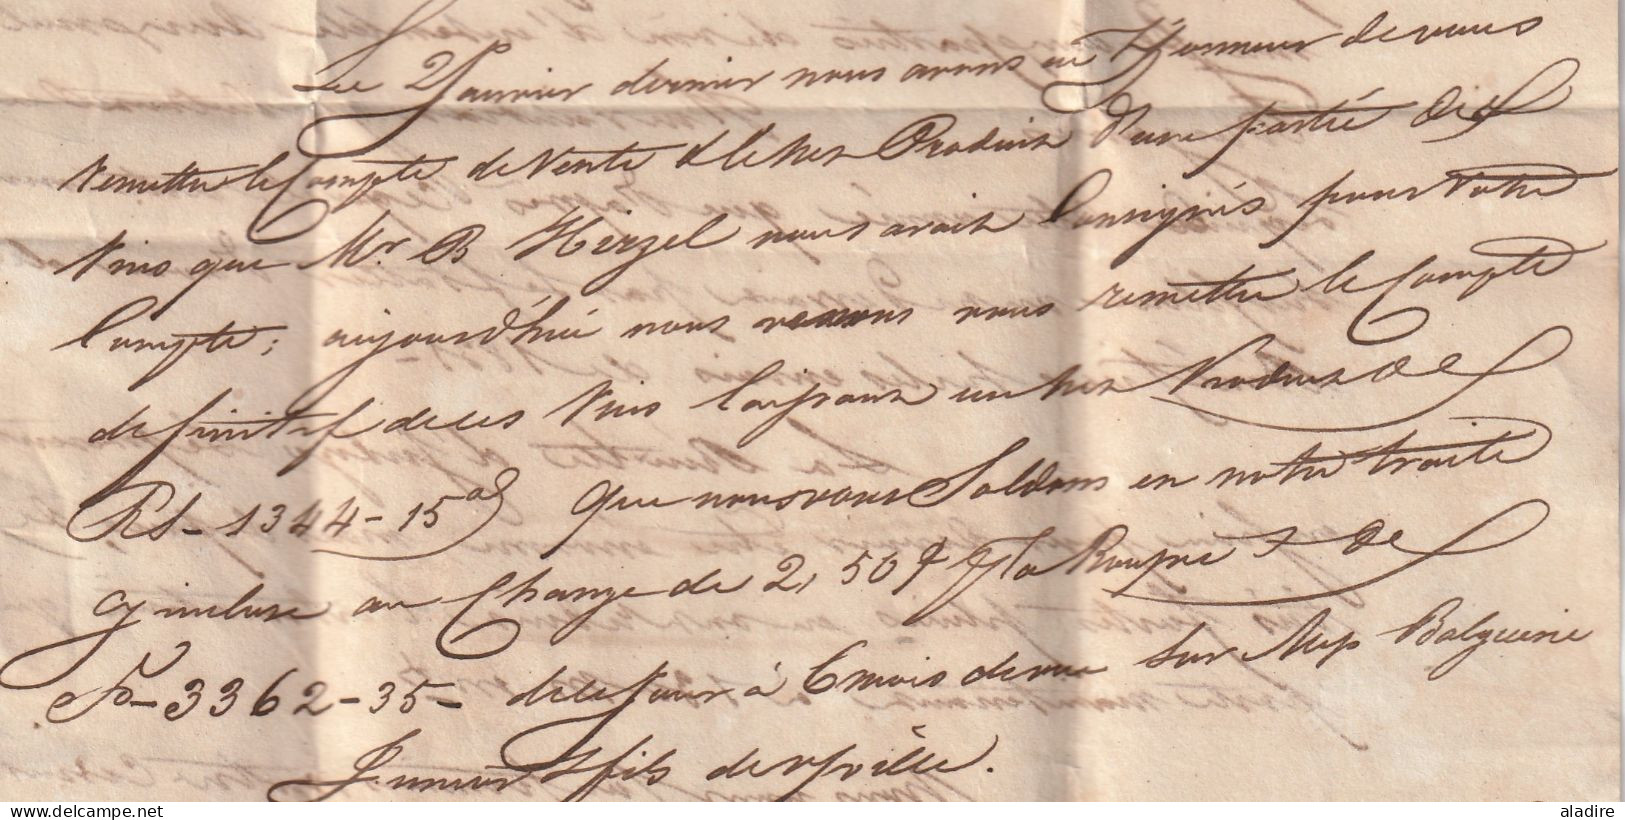 1830 KWIV - lettre en français 3 pages de CALCUTTA, Inde vers BORDEAUX, France - PAYS D' OUTREMER PAR NANTES